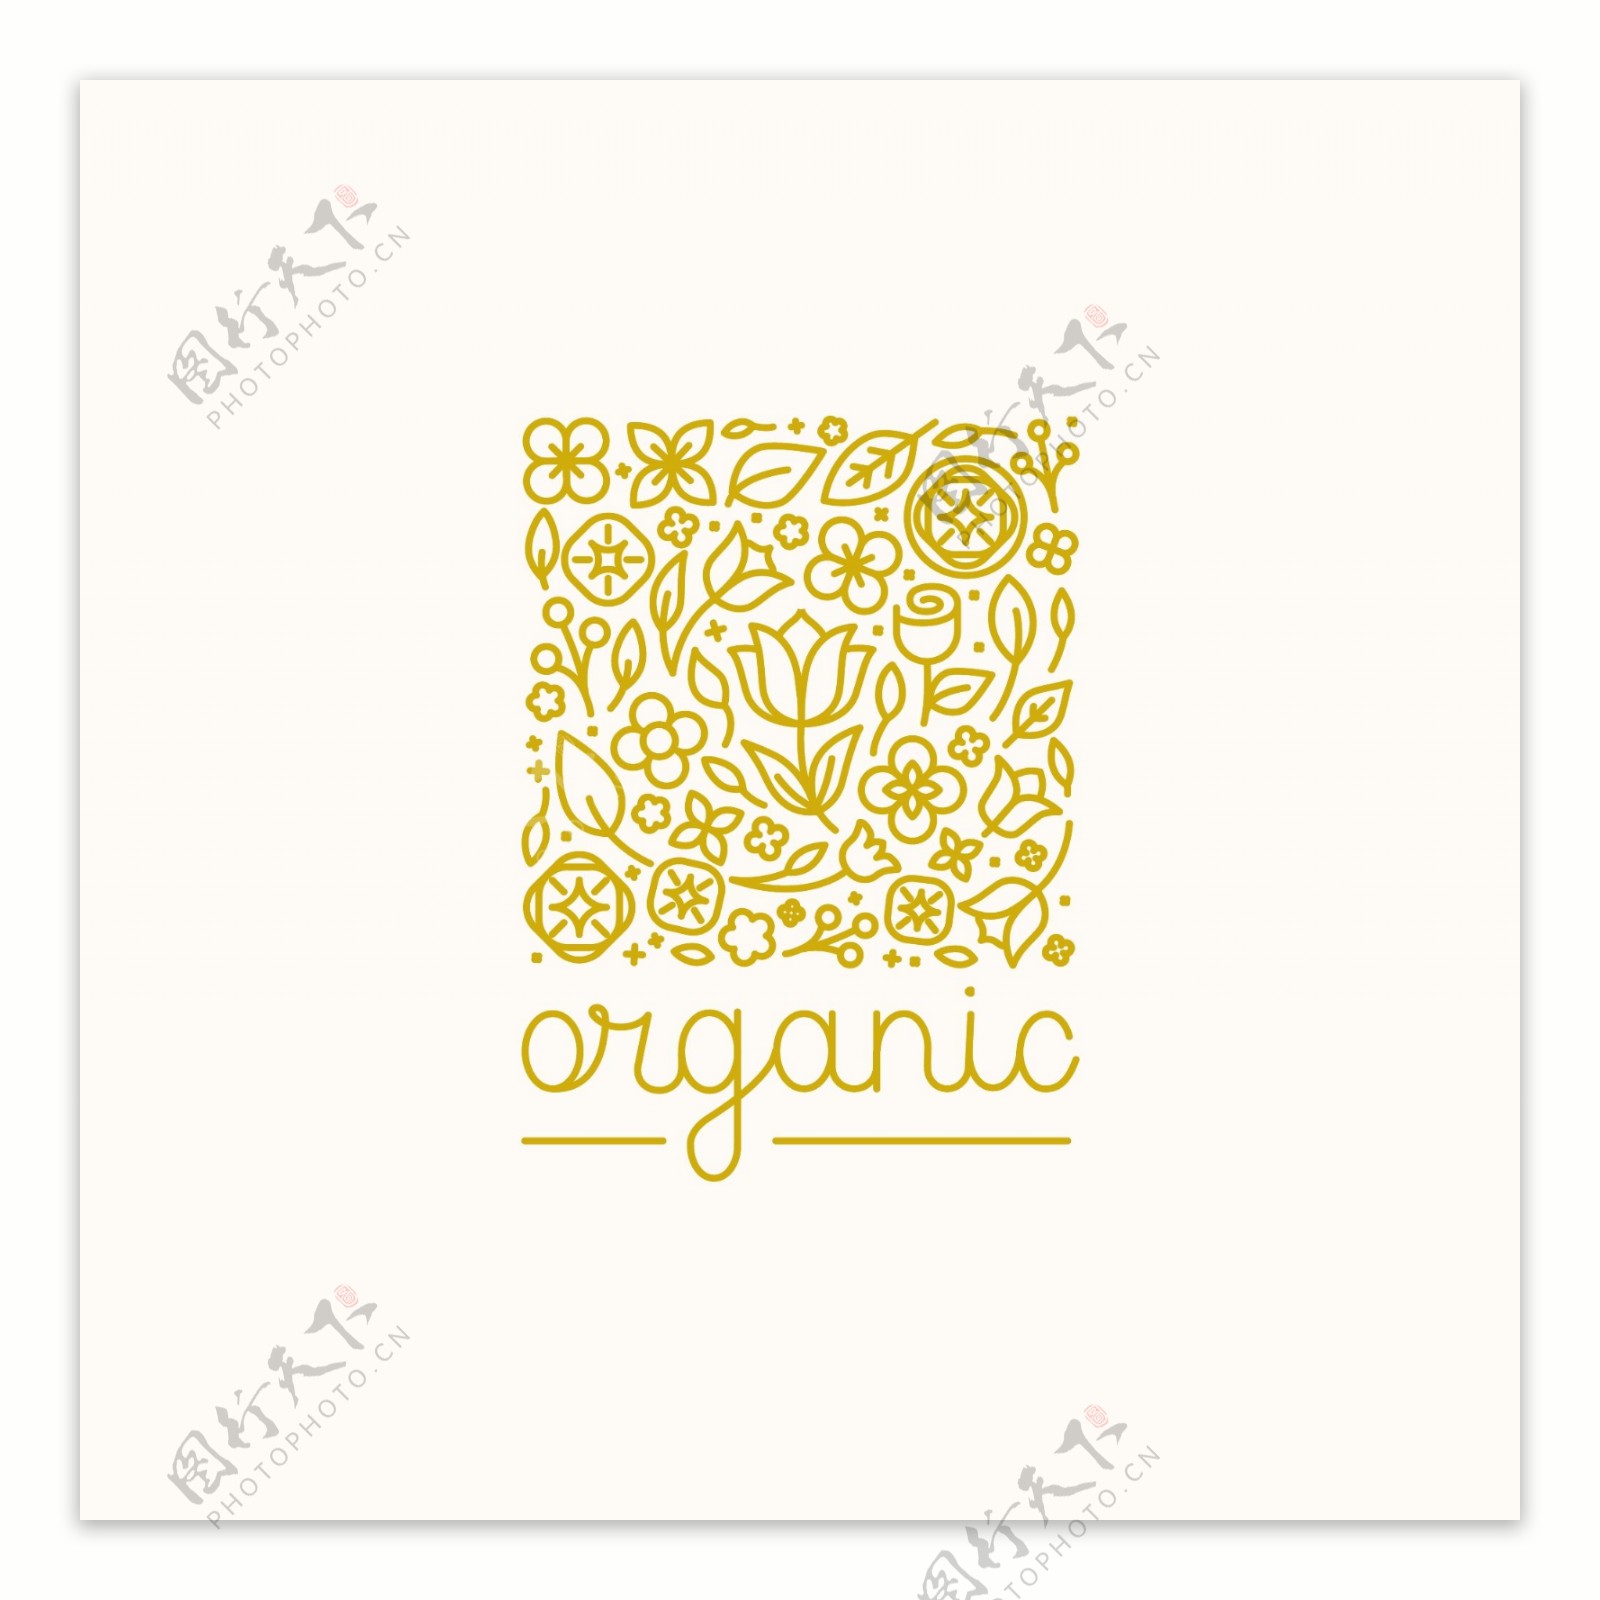 抽象植物新鲜健康食品logo矢量素材